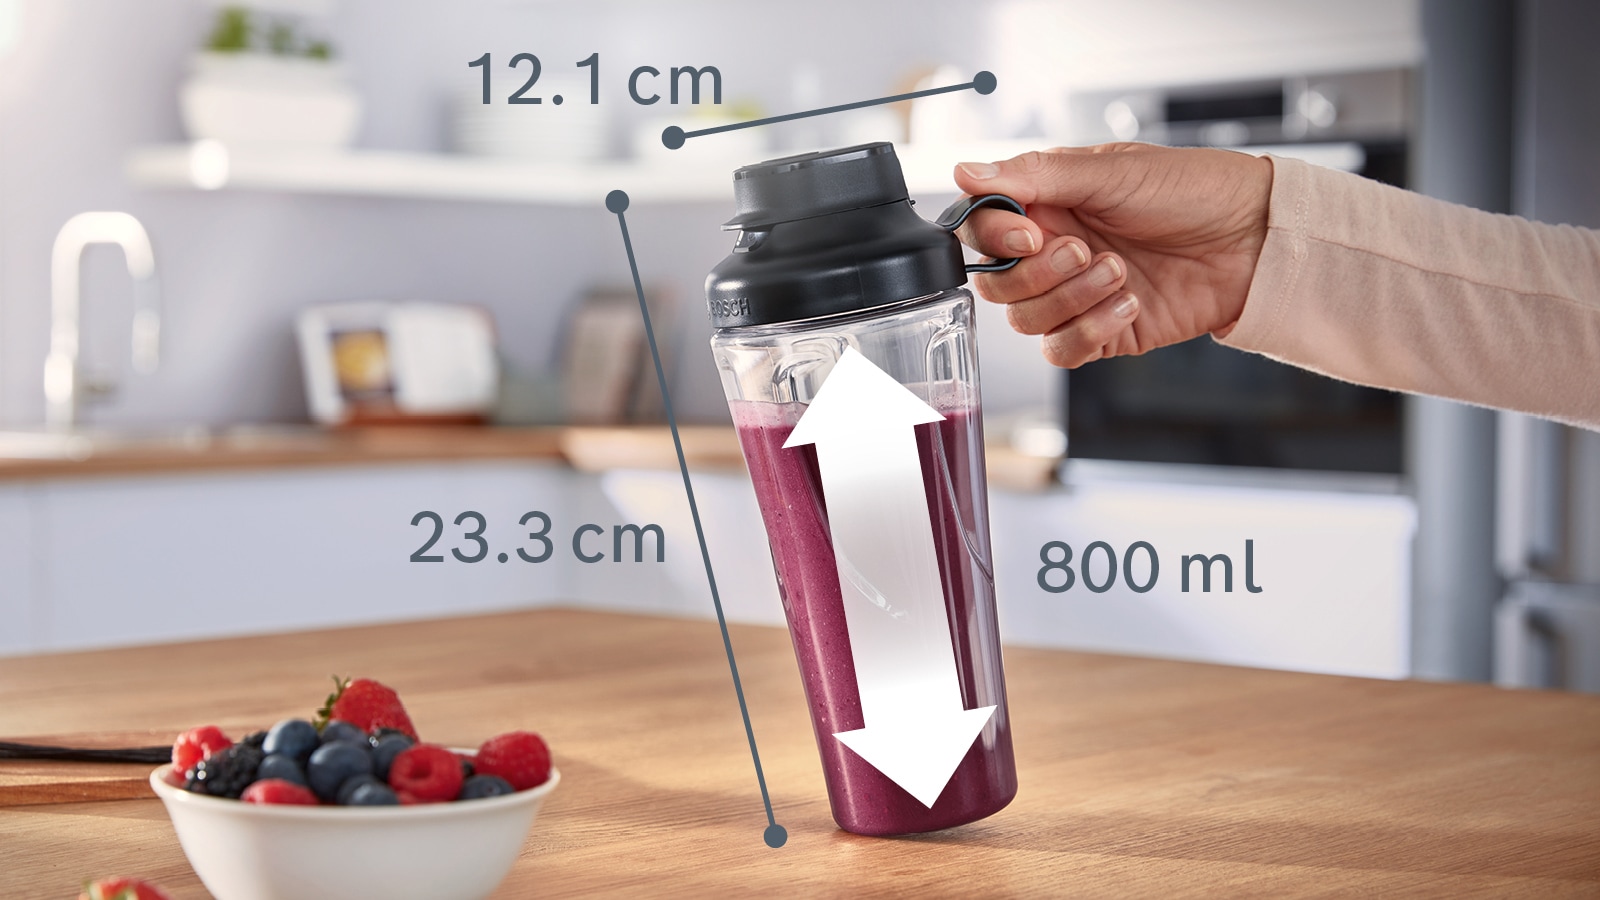 BOSCH Trinkflasche »MMZBT01B«, (Packung, 1 tlg.), passend für OptiMUM Küchenmaschine und VitaPower Series 4 Standmixer